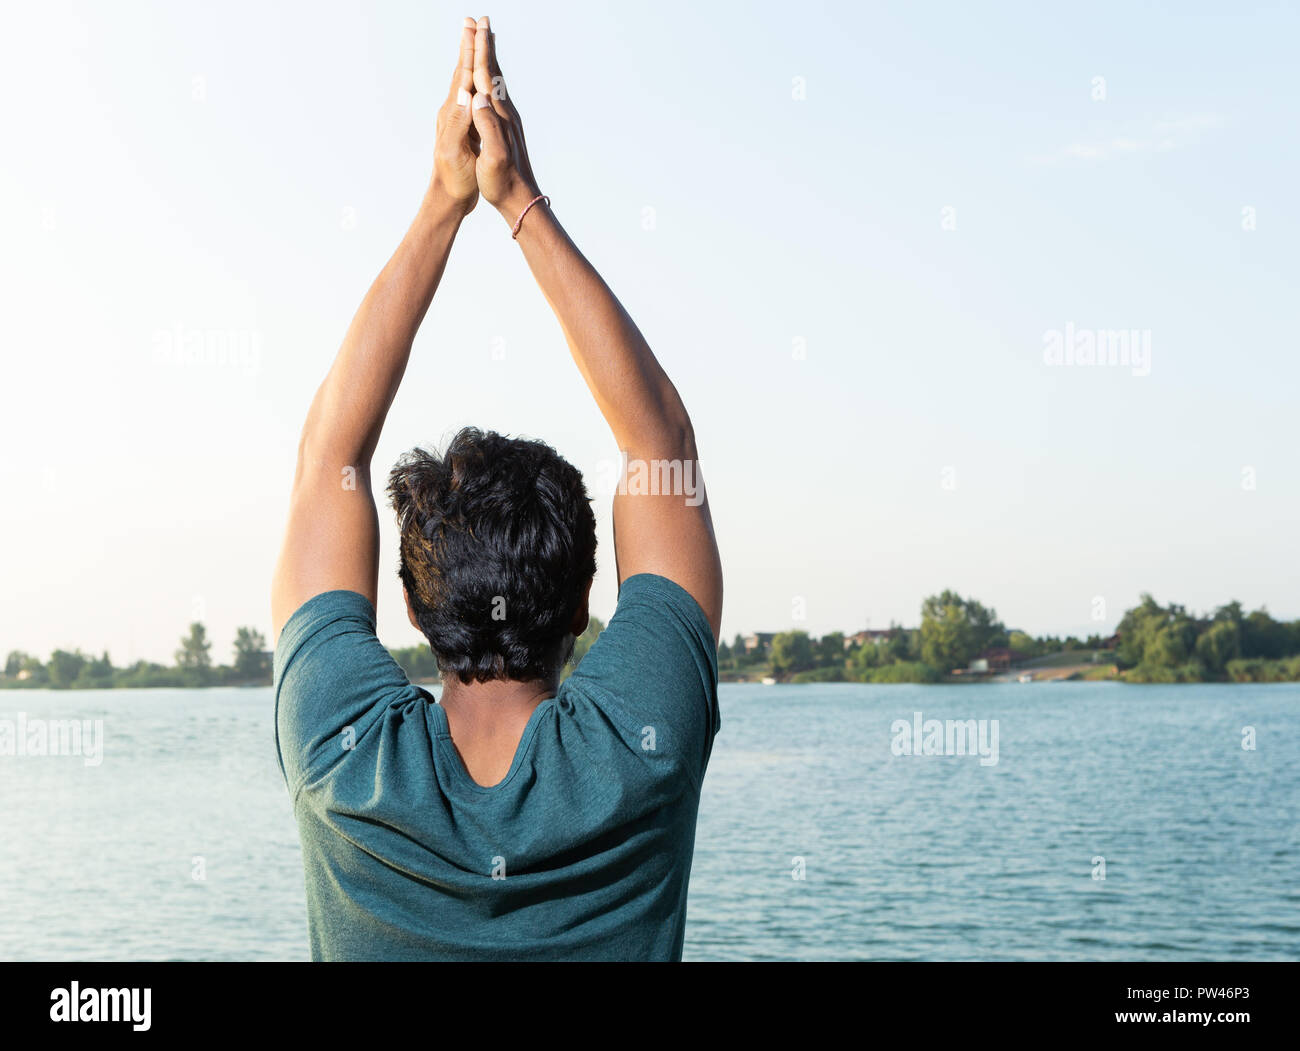 Indische yoga Master mit hands up pose Bild von hinten in der Nähe von natürlichen Hintergrund mit See Stockfoto